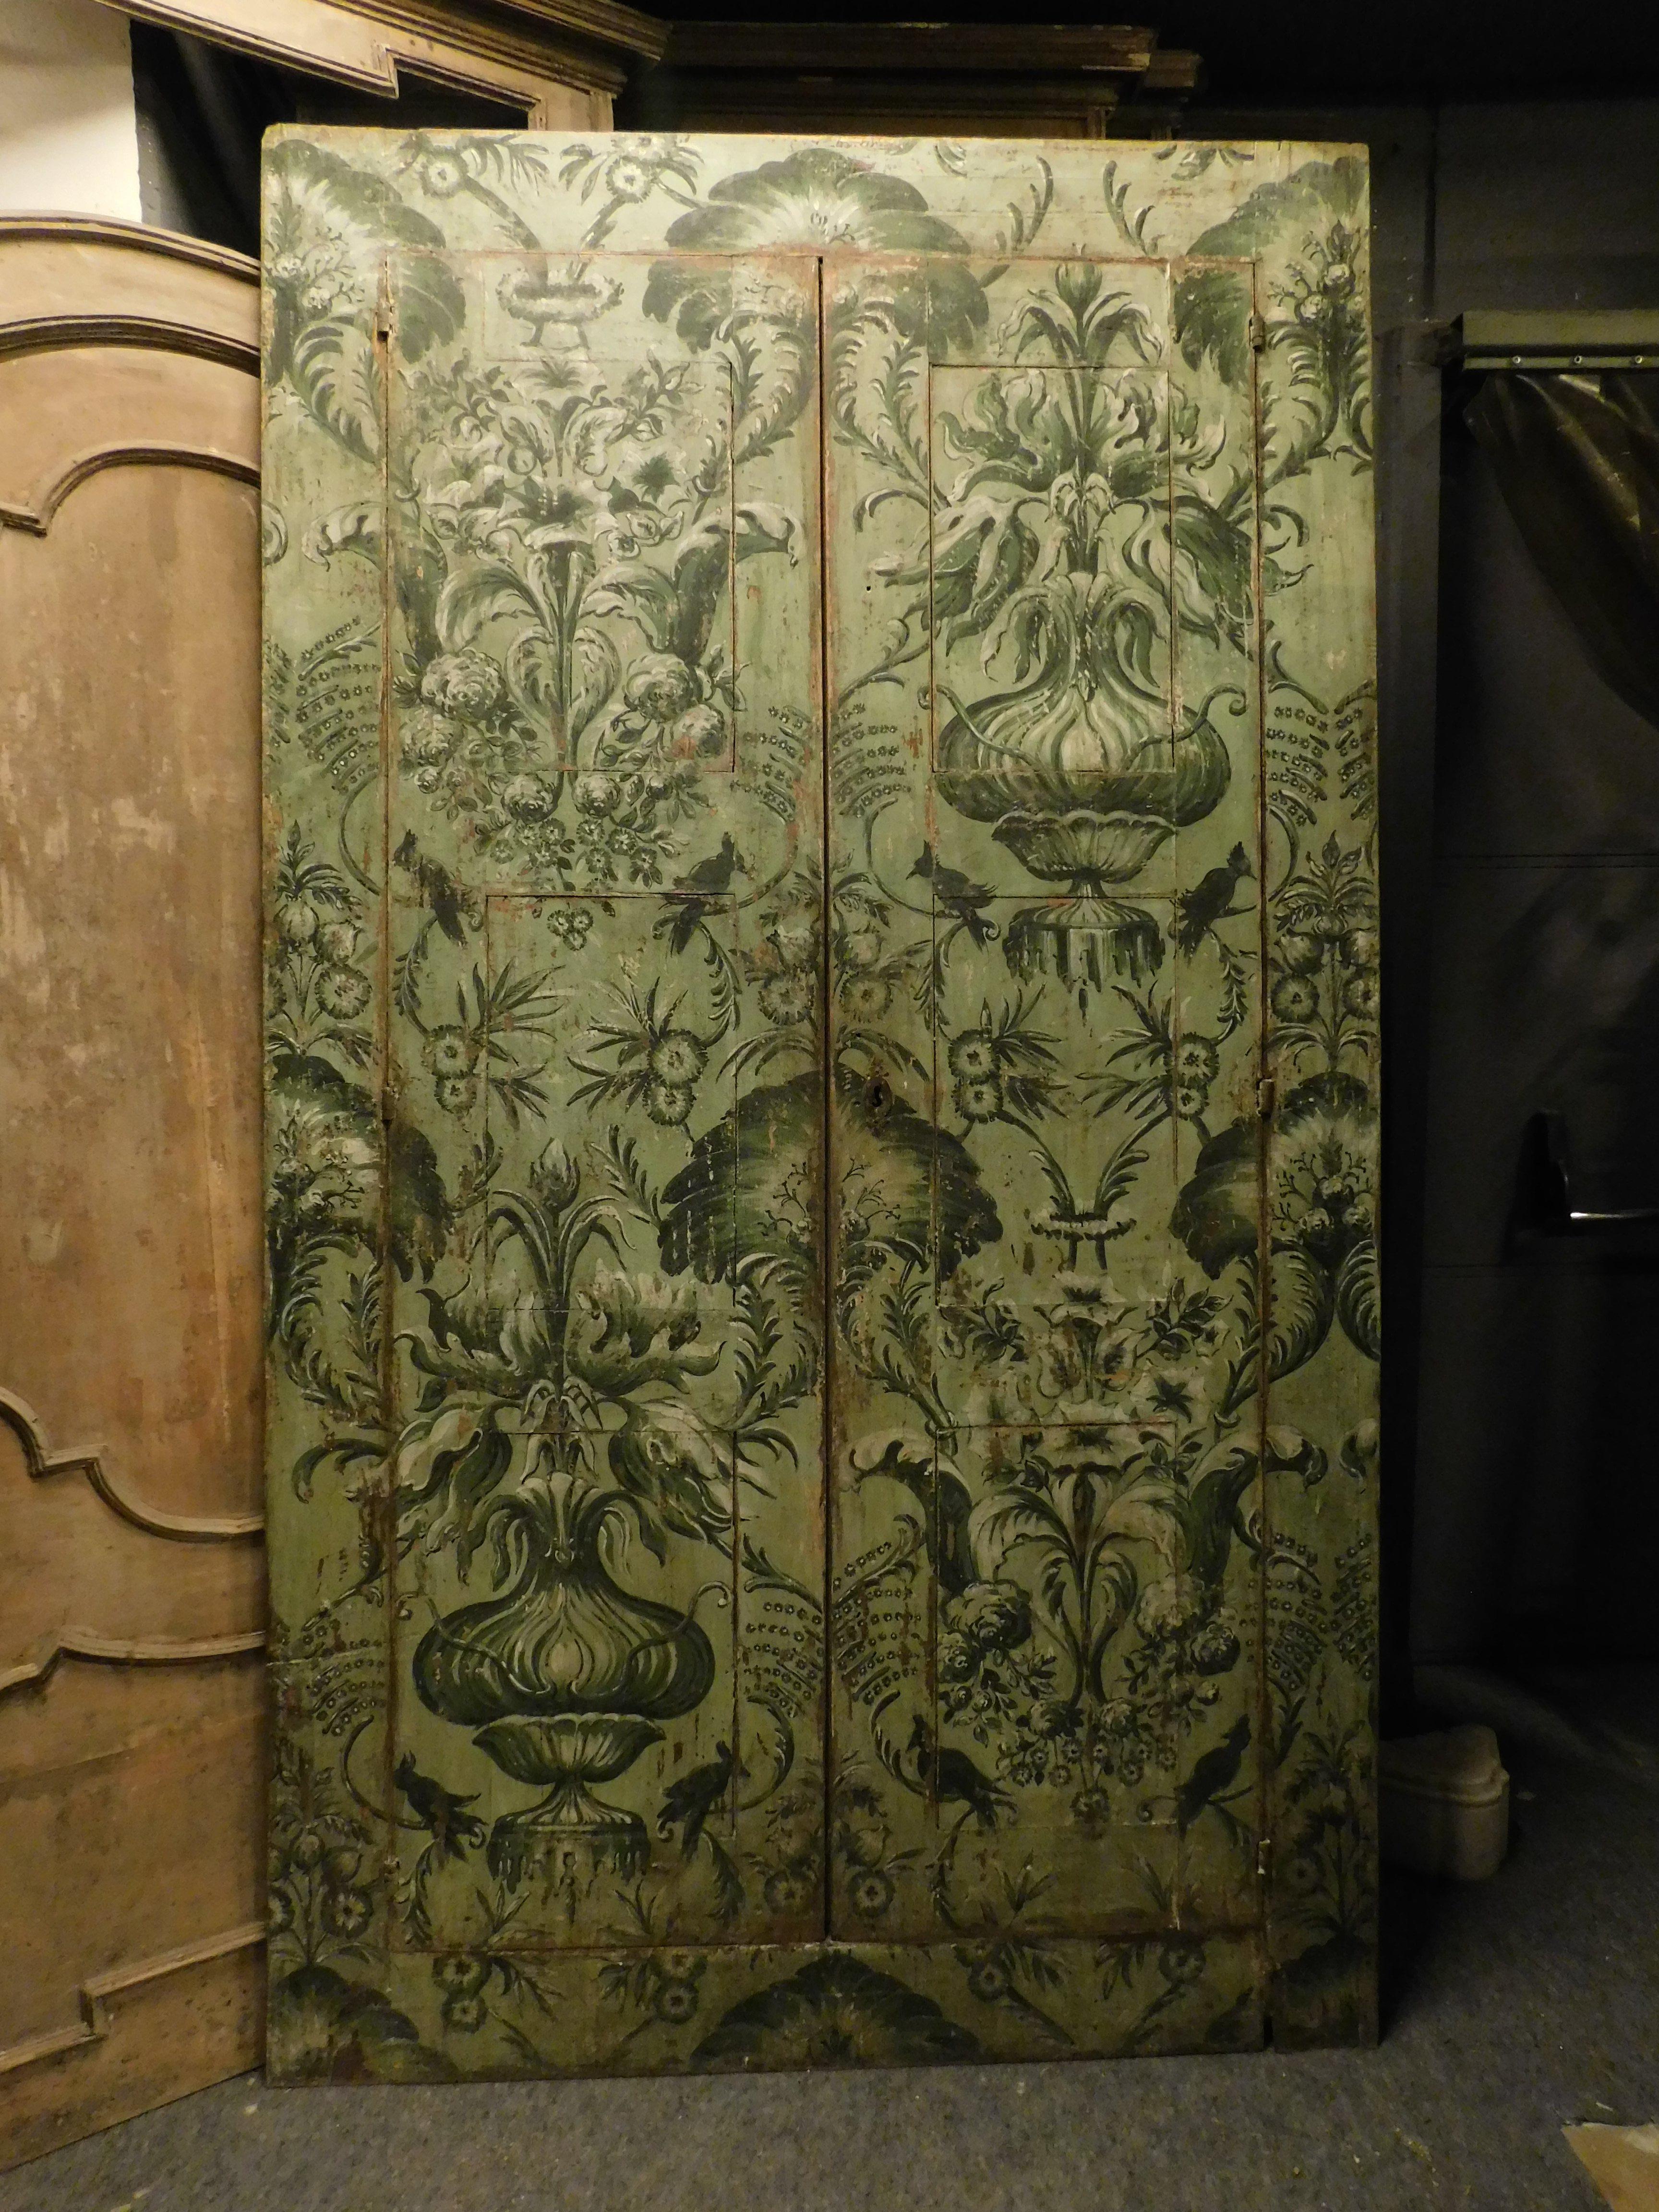 Antikes Plakat, Vintage-Einbauschrank, reich handbemalt auf grünem Grund mit dschungelartigen Blumenmotiven, geschaffen für den Einbauschrank eines antiken Hauses in Florenz, es wurde geschaffen, um die Polsterung der damaligen Zeit wieder